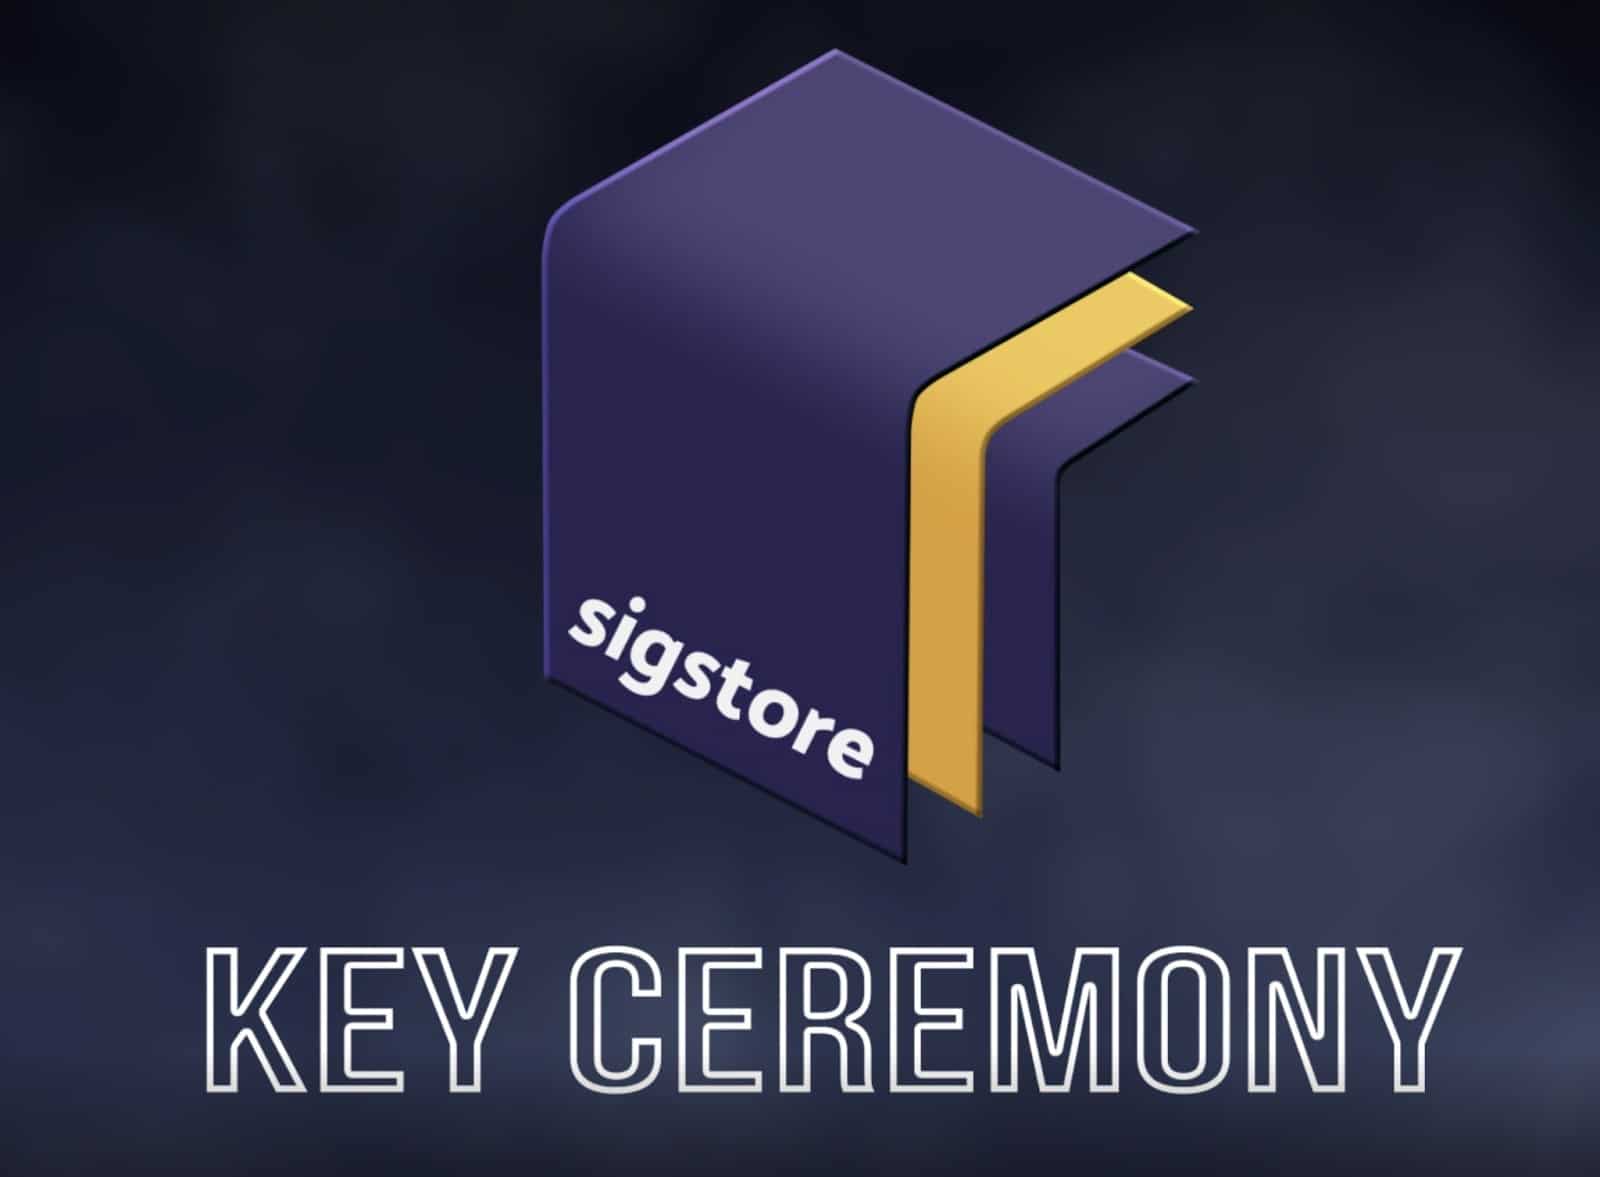 Sigstore key ceremony